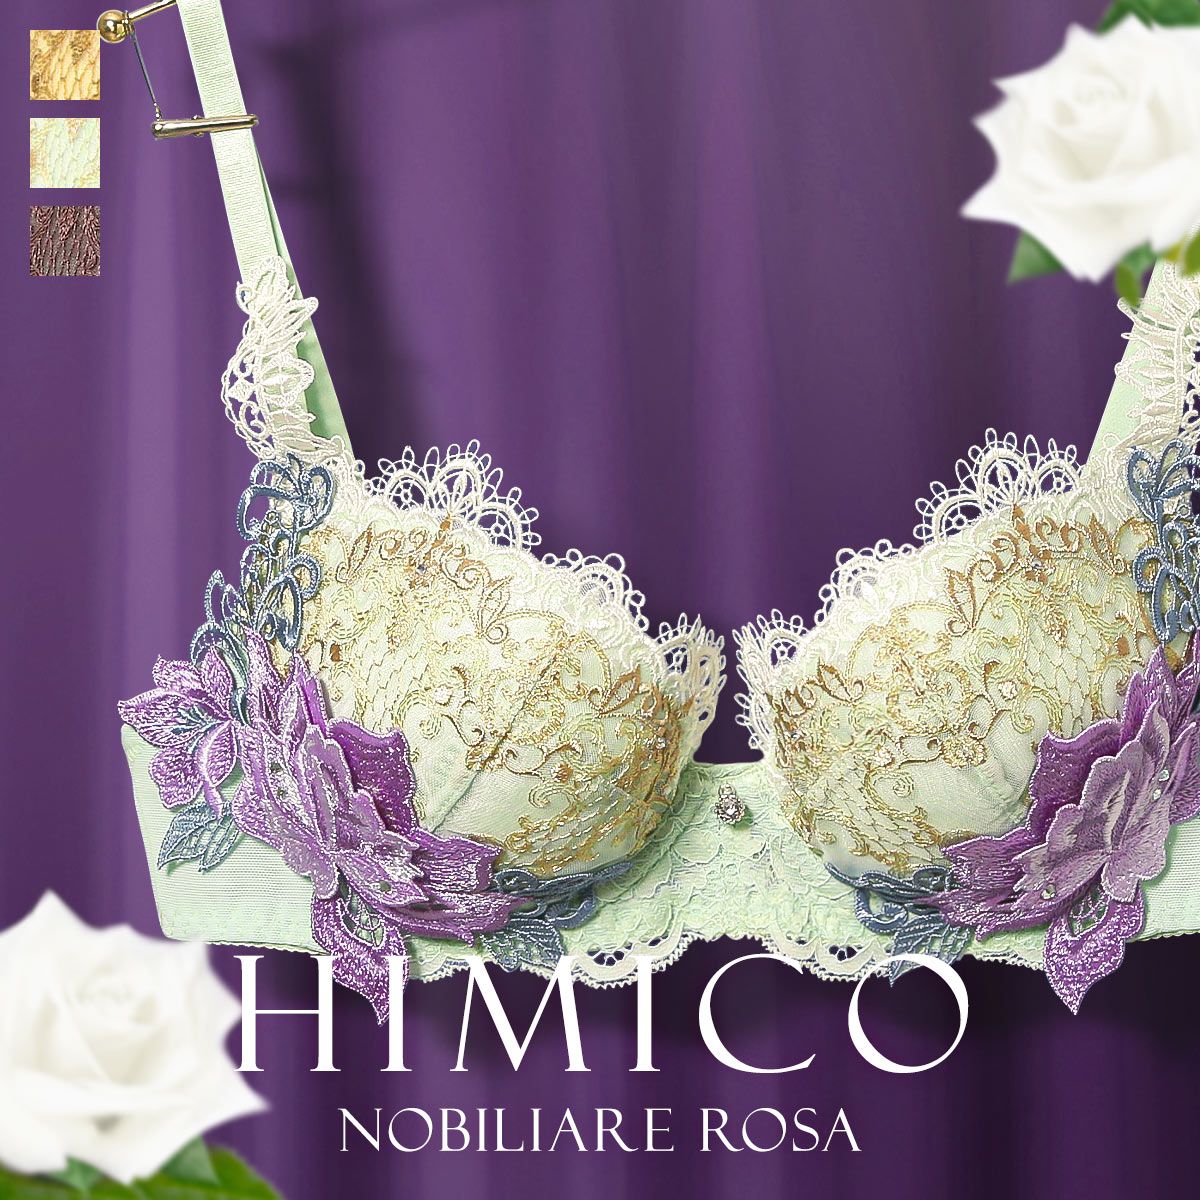 ブラジャー 大きいサイズ 送料無料 HIMICO 優美な貴族女性を思わせる Nobiliare Rosa BCDEF 020series 単品